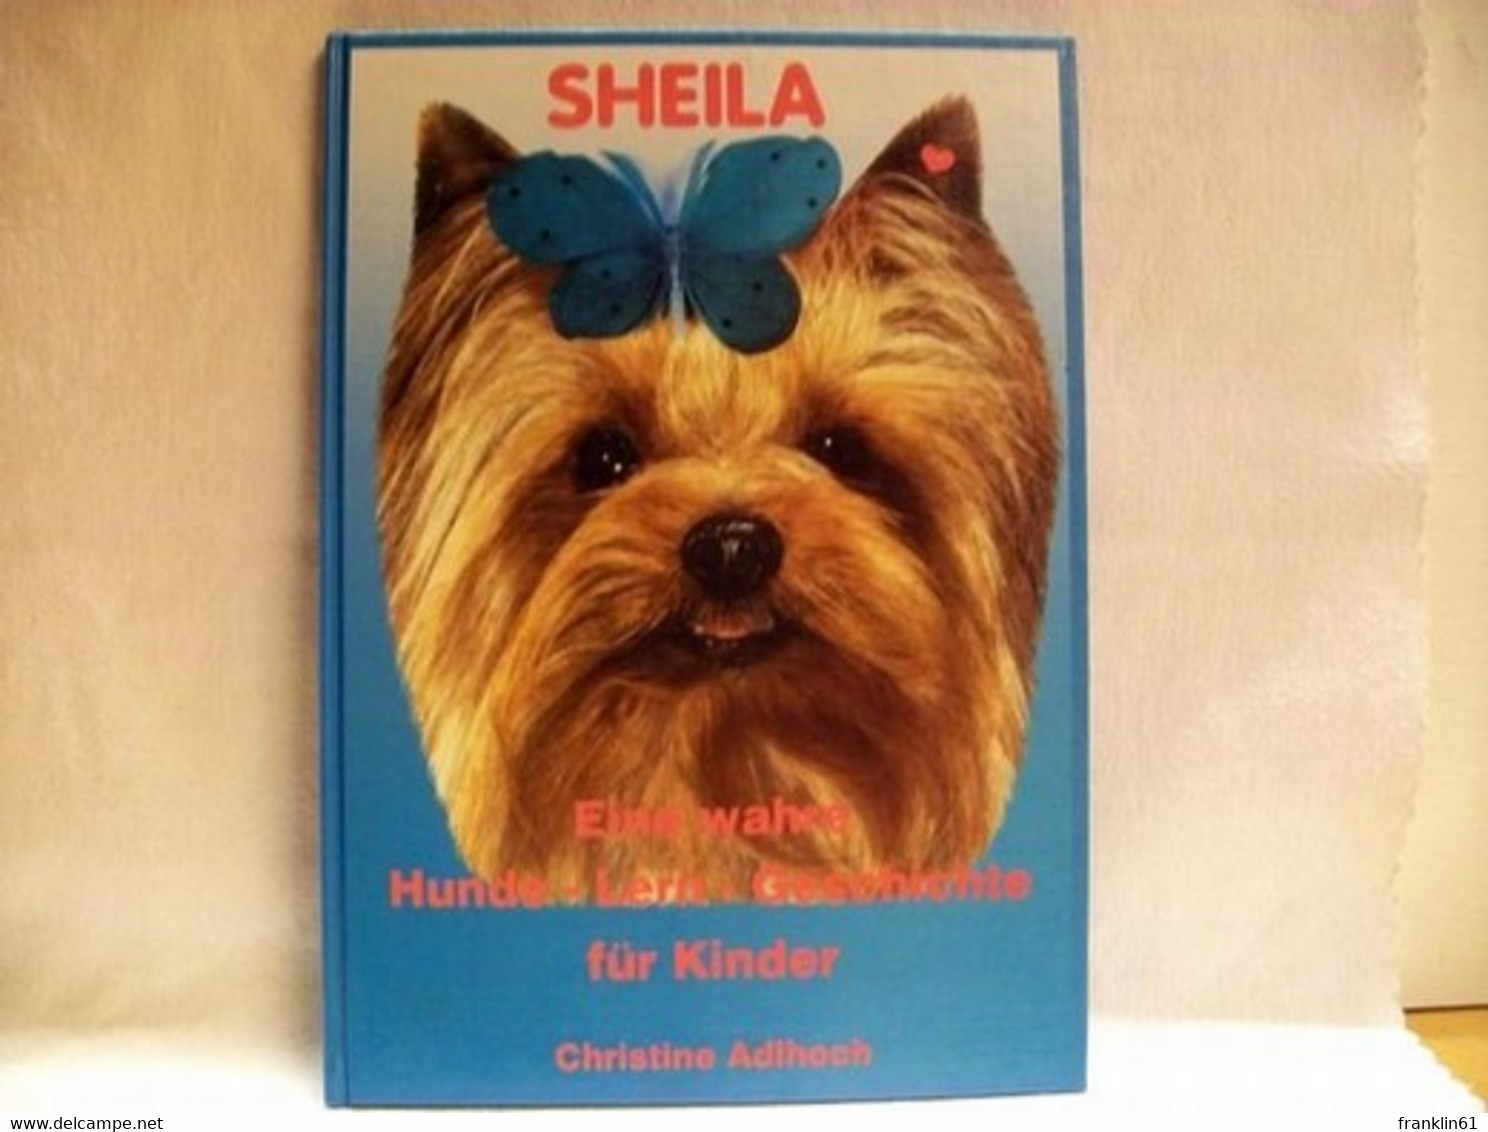 Sheila : Eine Wahre Hunde-Lern-Geschichte Für Kinder - Animales